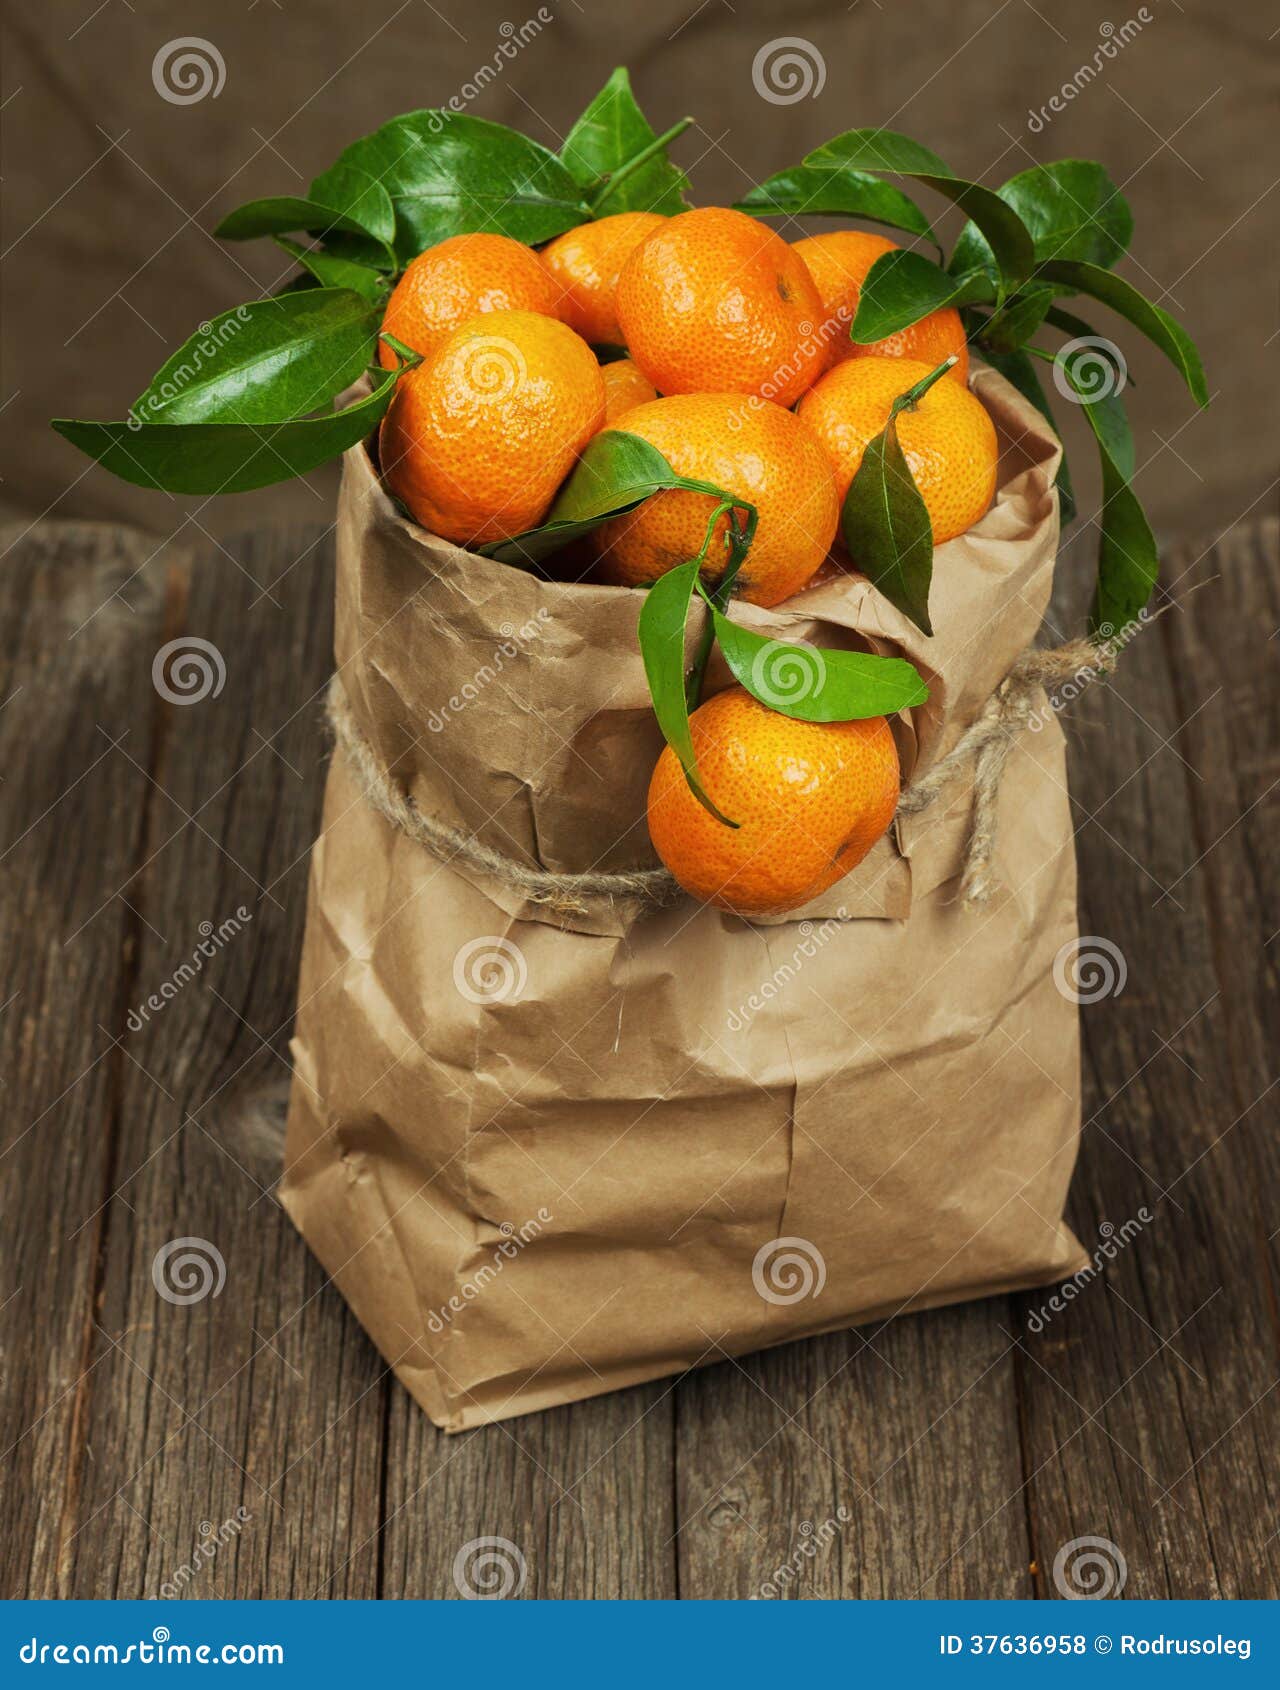 В пакете лежат мандарины. Апельсины в пакете. Мешок мандаринов. Мандарины в пакете. Пакет мандаринов.